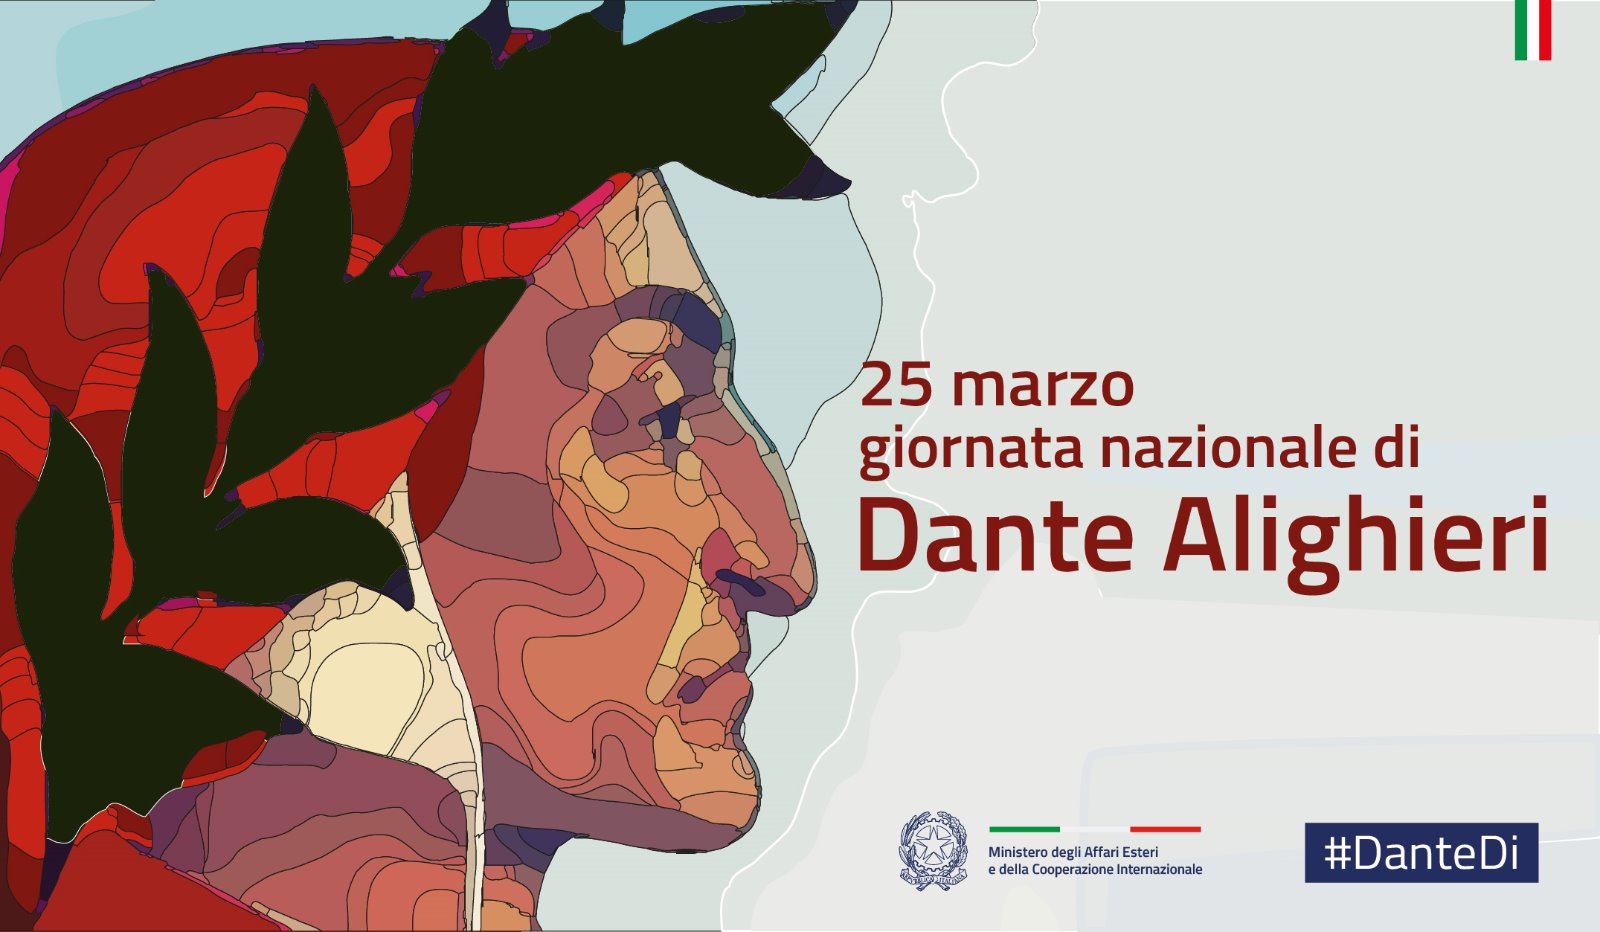 Il 25 marzo sarà "Dantedì", la giornata dedicata a Dante Alighieri -  Italofonia.info